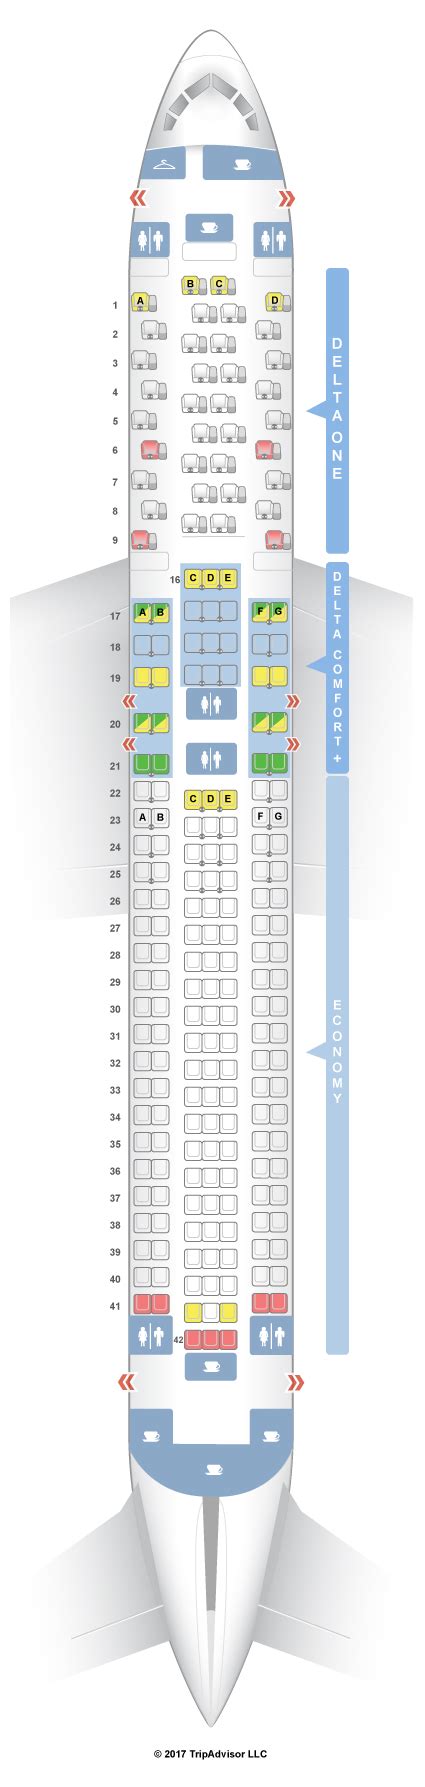 Delta 767-300 seatguru. Things To Know About Delta 767-300 seatguru. 